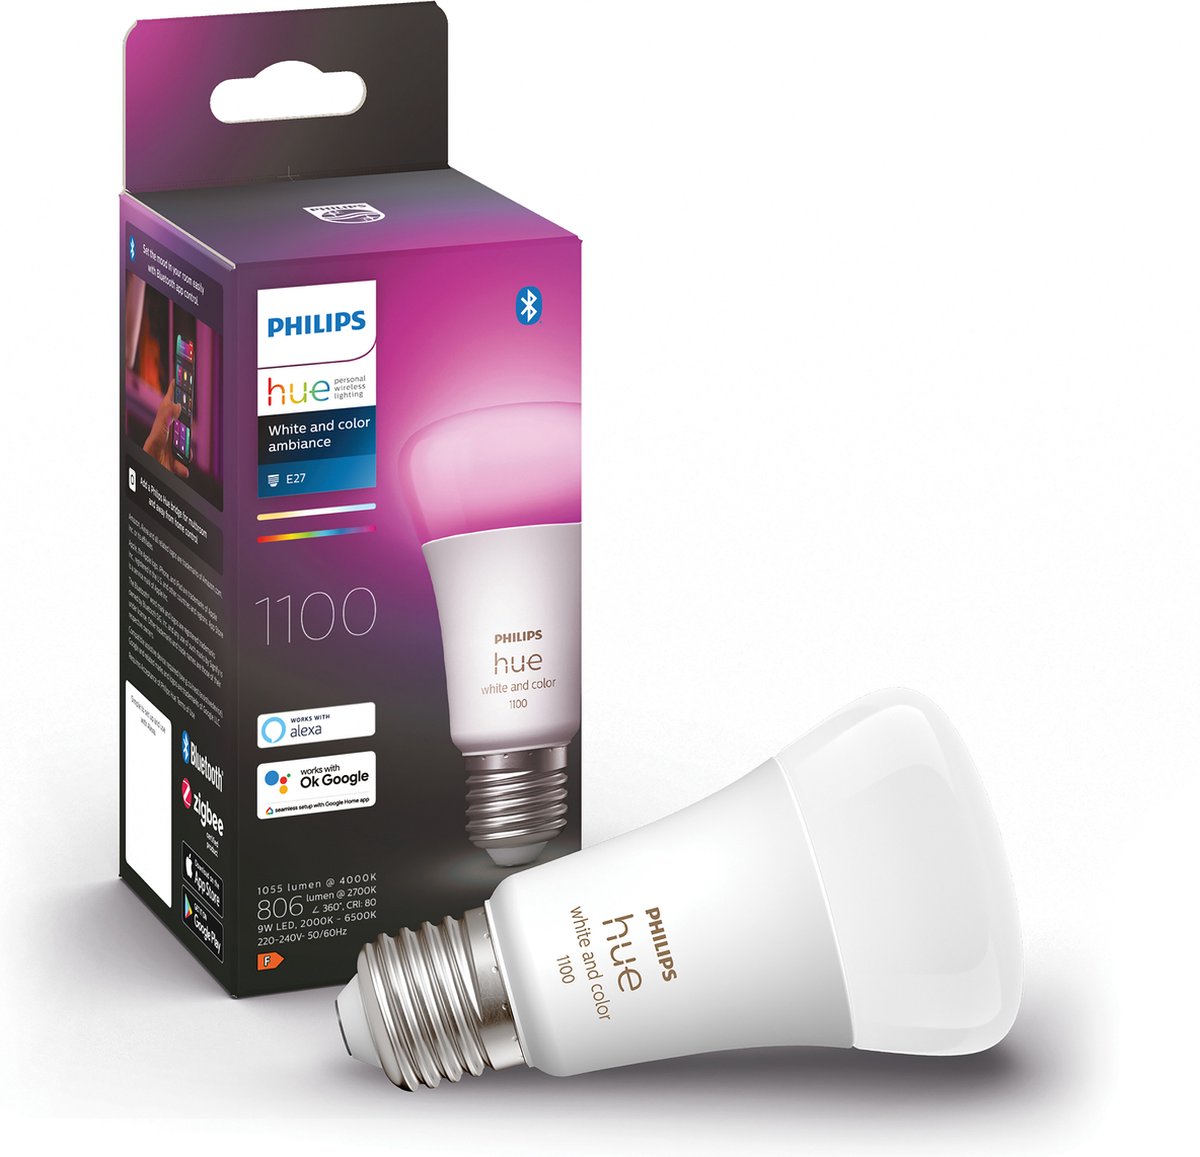 Philips Hue standaardlamp E27 Lichtbron - wit en gekleurd licht - 1-pack - 1100lm - Bluetooth - Philips Hue